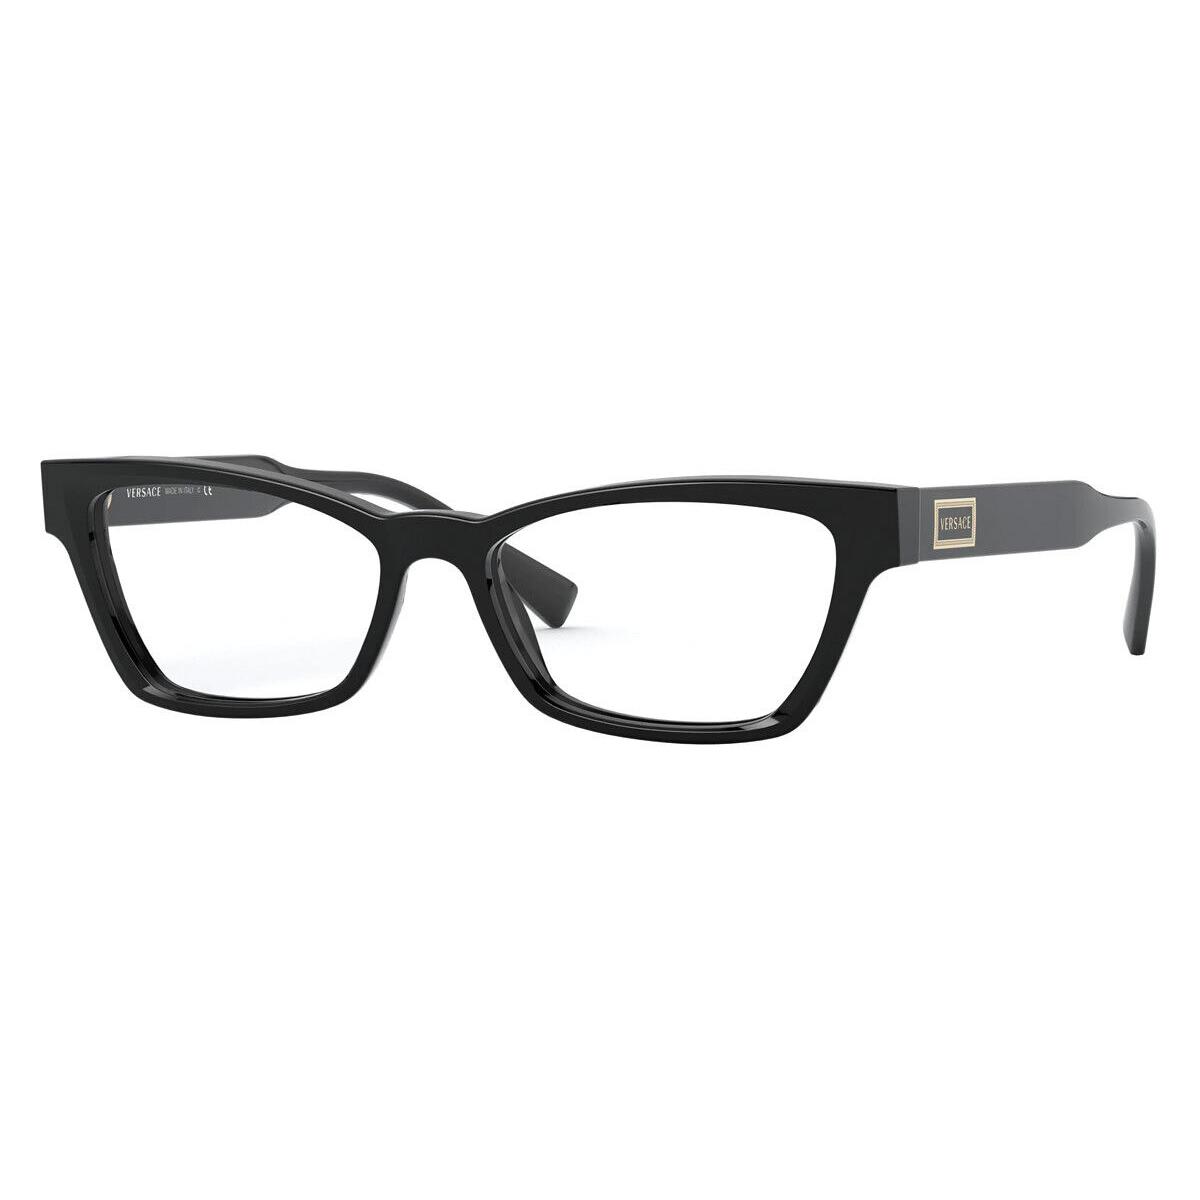 Versace Eyeglasses Ve3275 Gb1 Black Full Rim Frames 53mm Rx Able Versace Eyeglasses Black